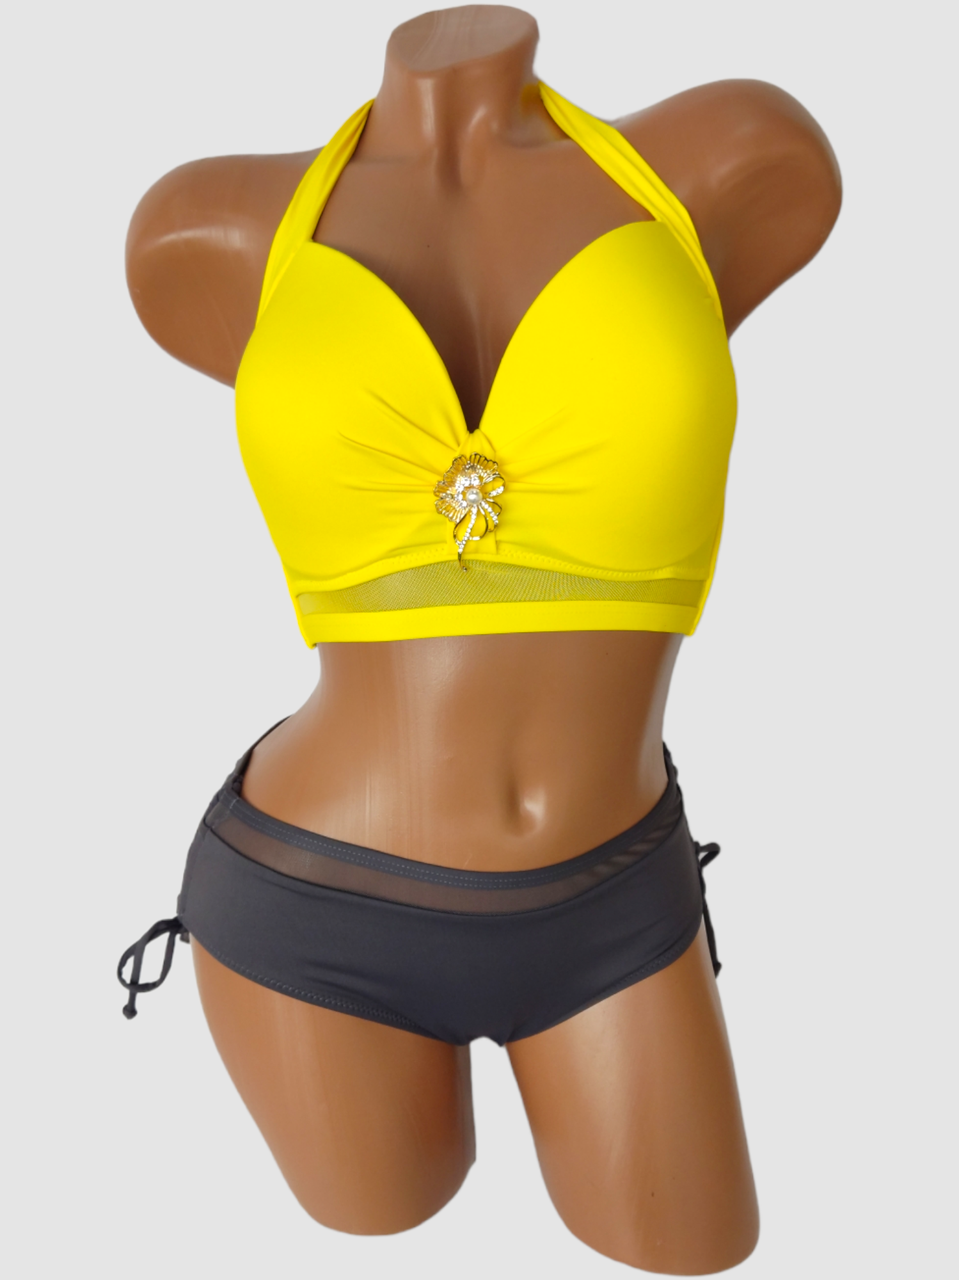 Жіночий купальник для великої груди Sisianna 5152 жовтий на укр 48 50 52 54 56 розмір